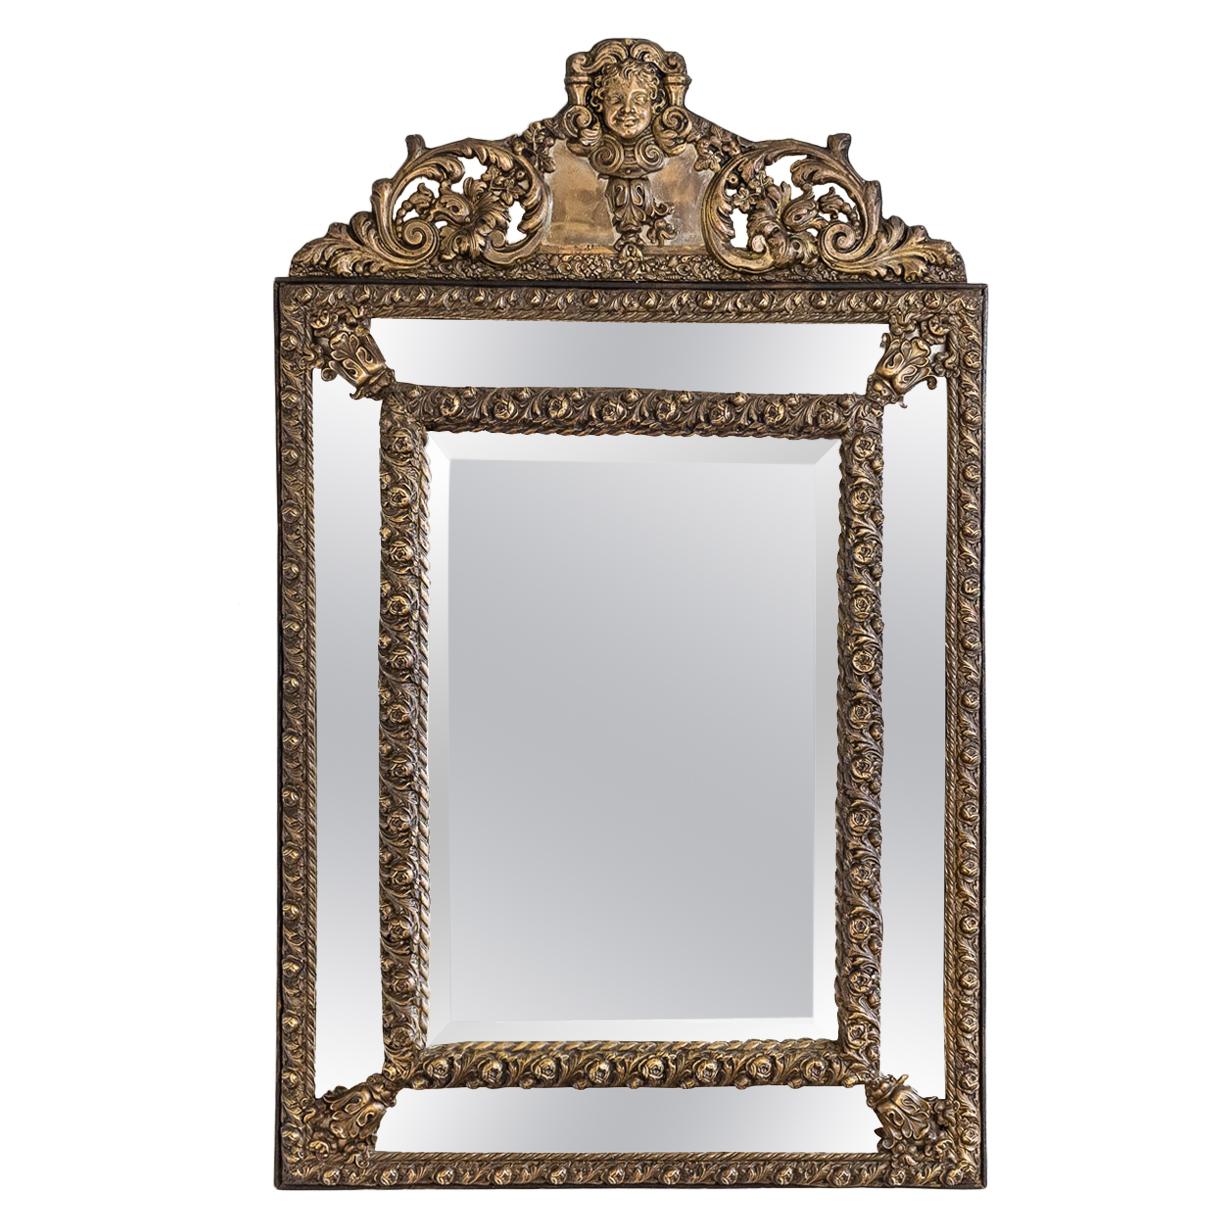 French Napoleon III Repoussé Cushion Mirror